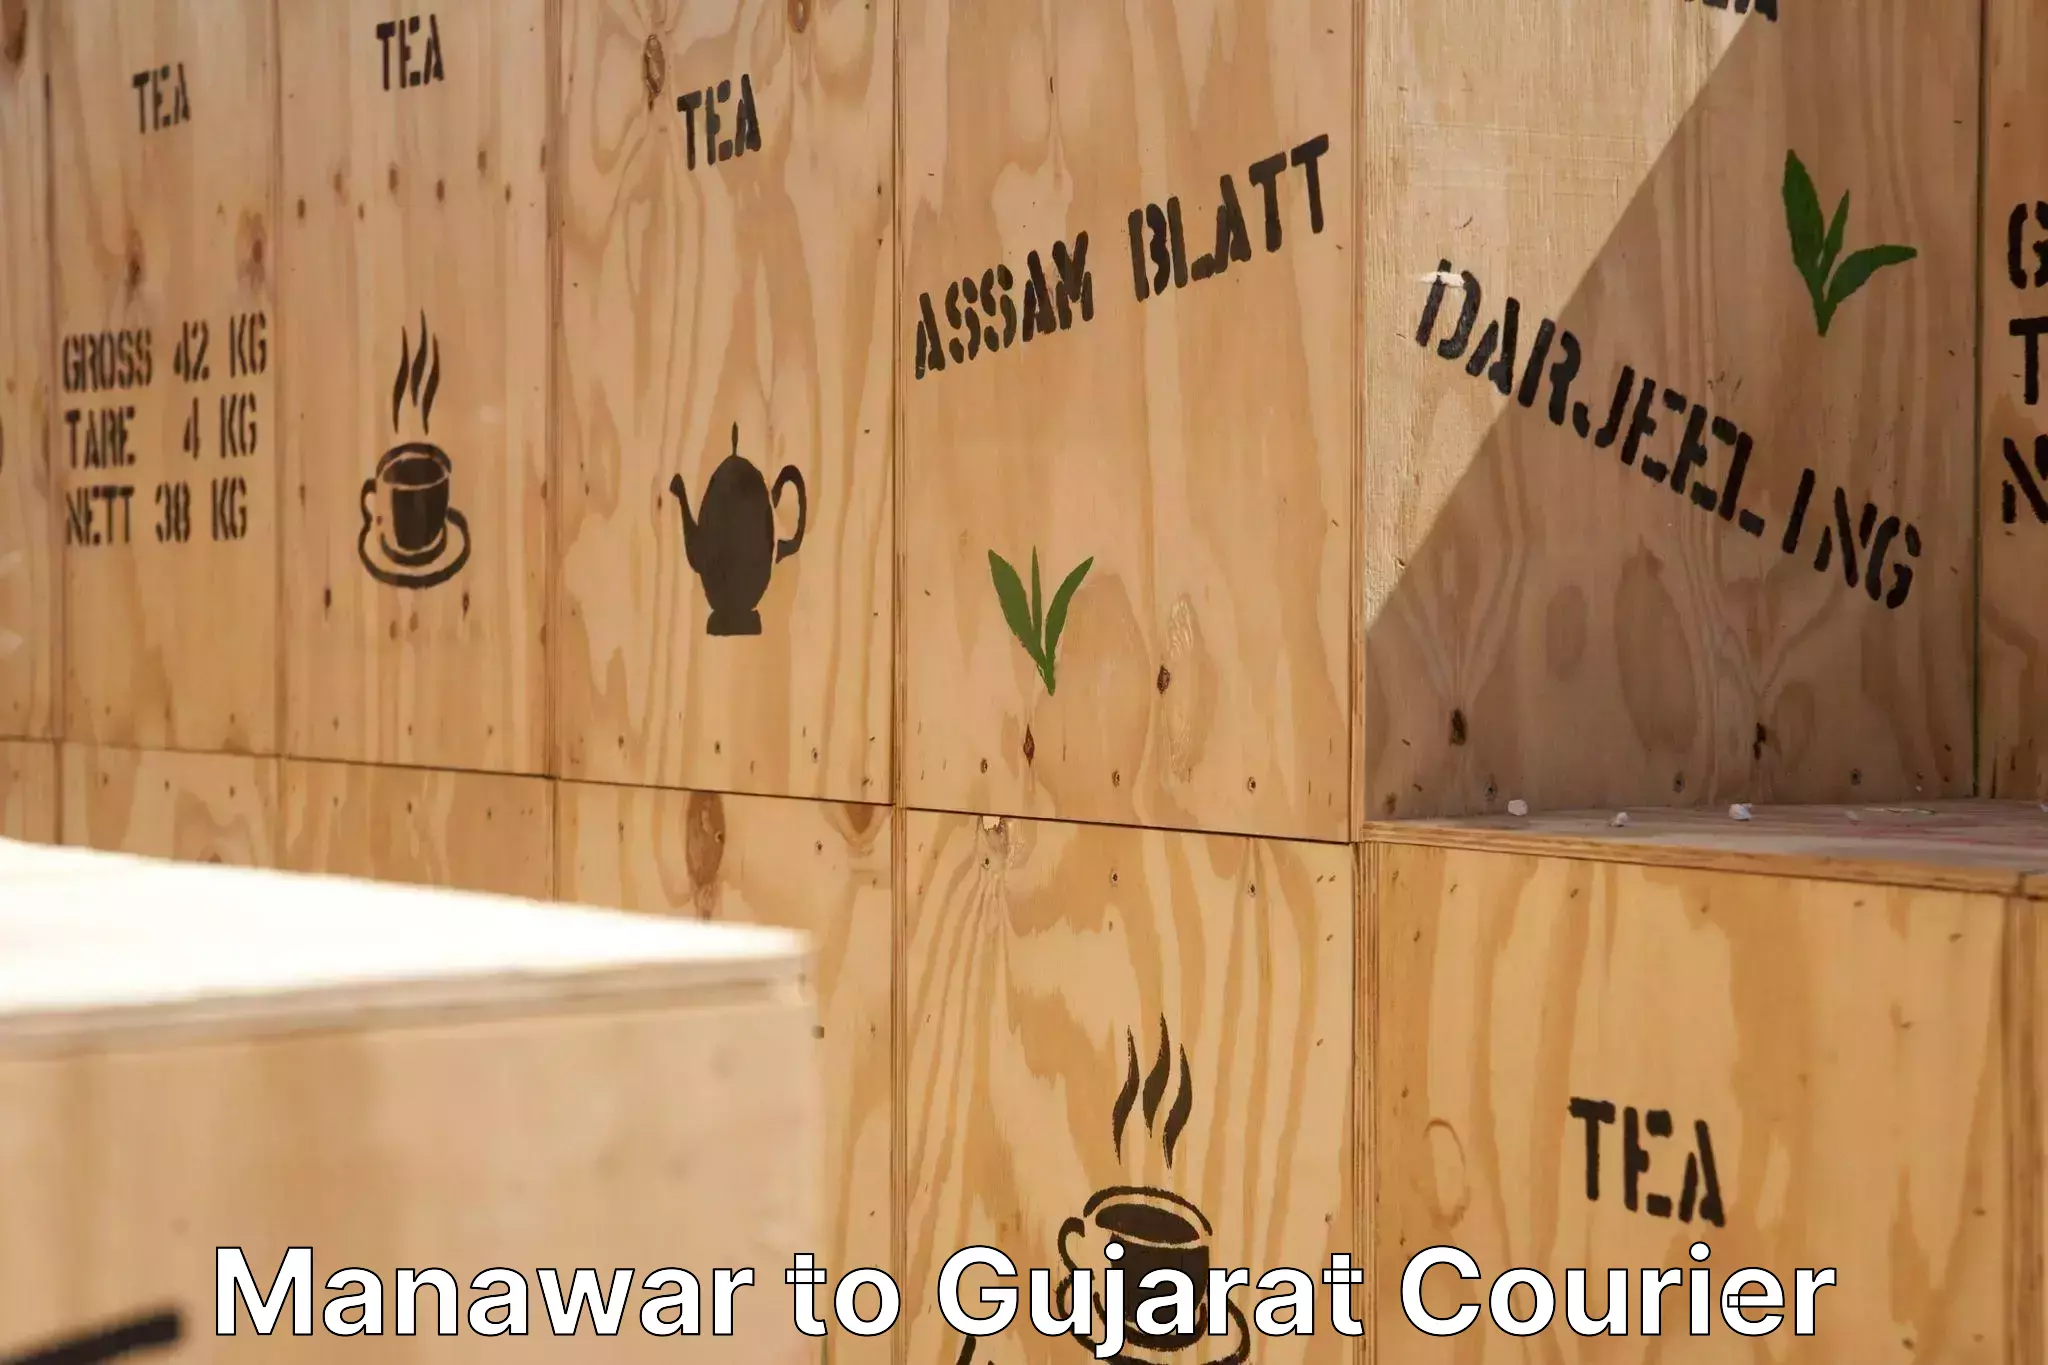 Furniture moving experts Manawar to Gandhinagar